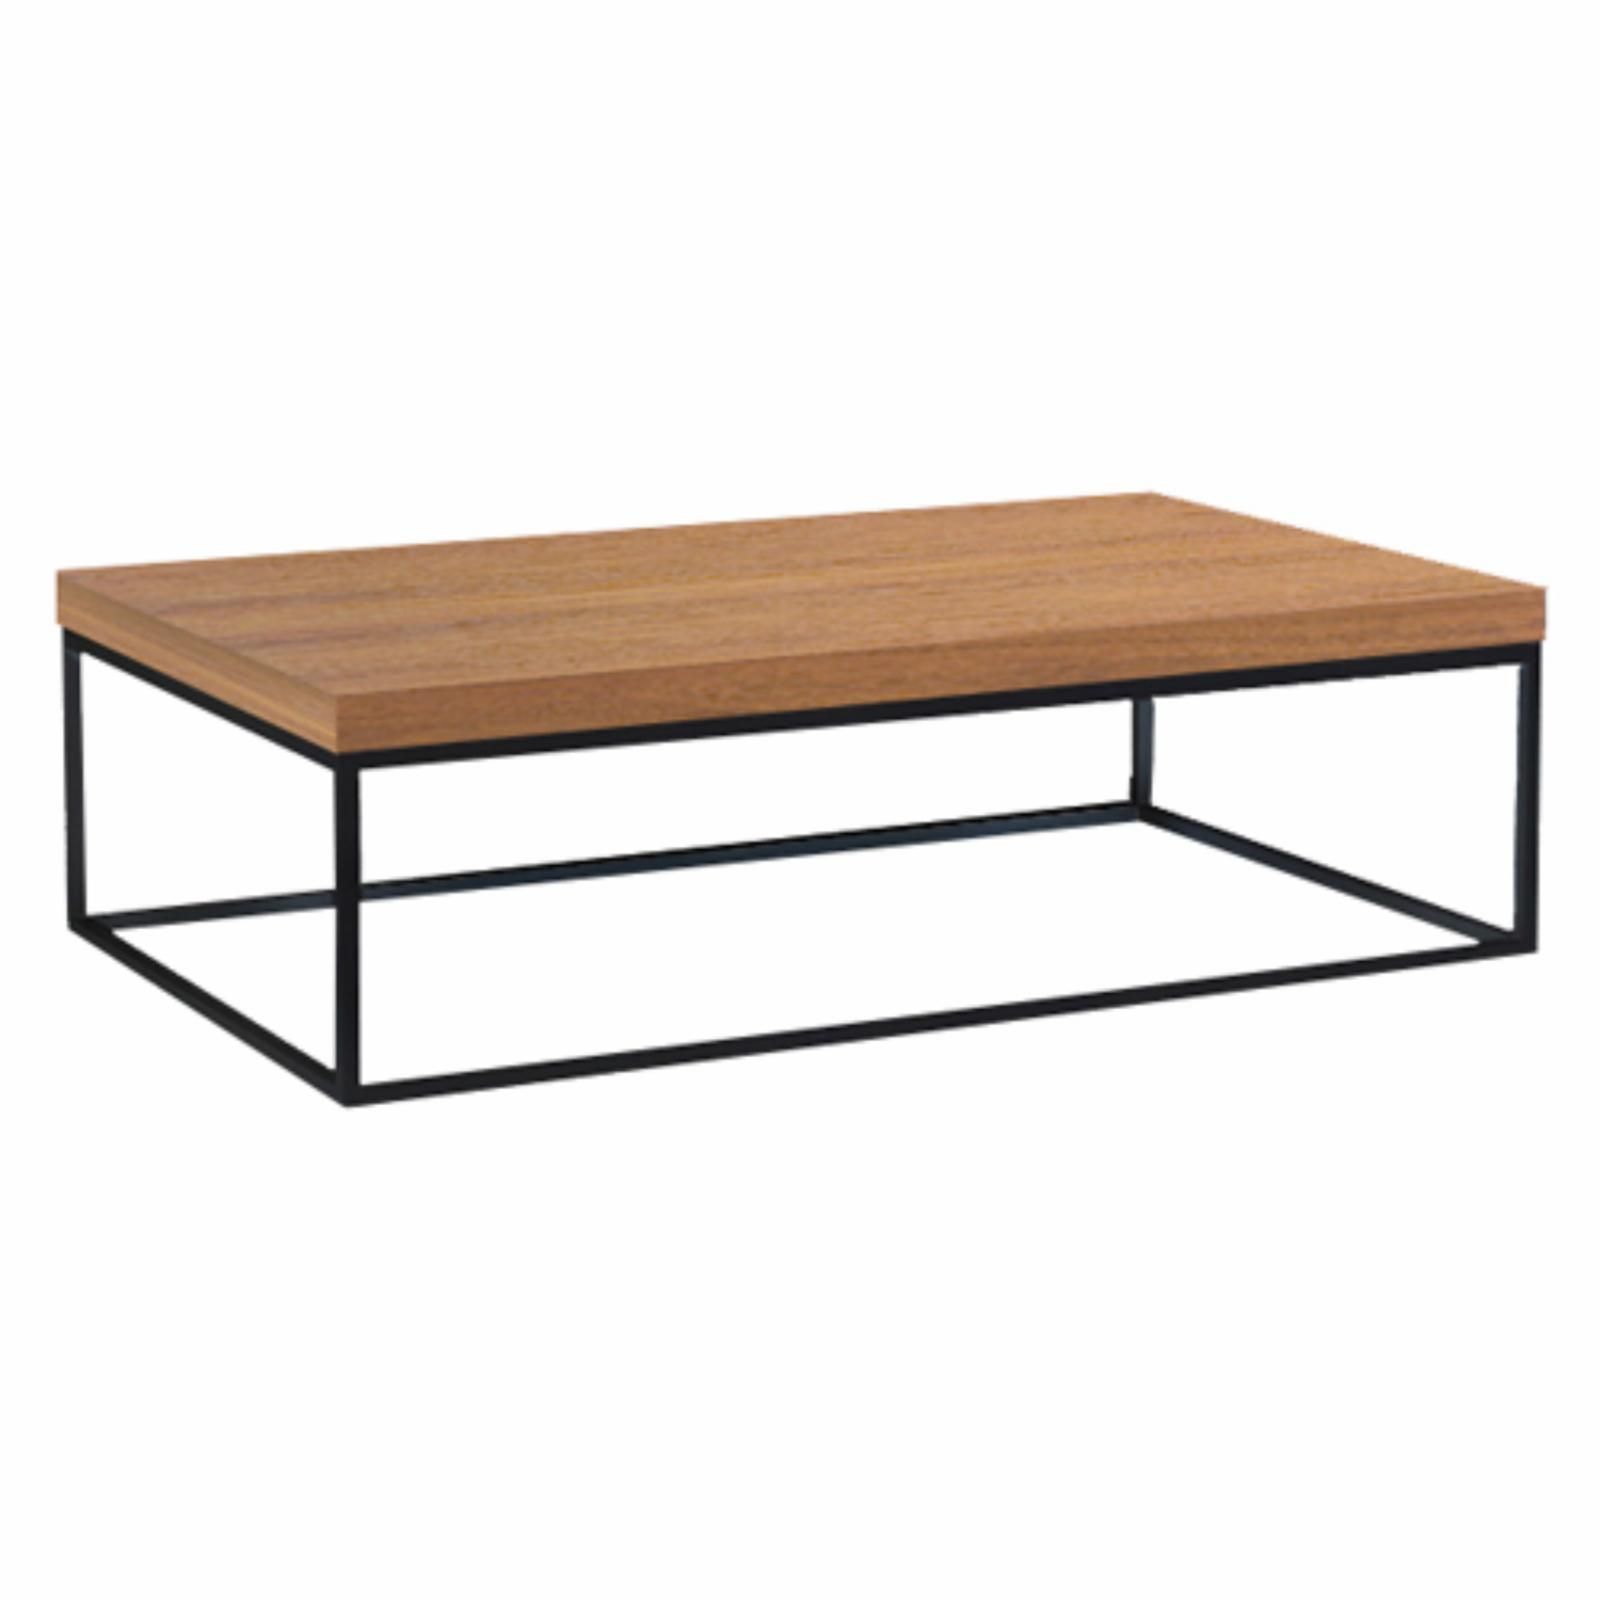 Tema Furniture Prairie Wood Top Coffee Table | Hayneedle